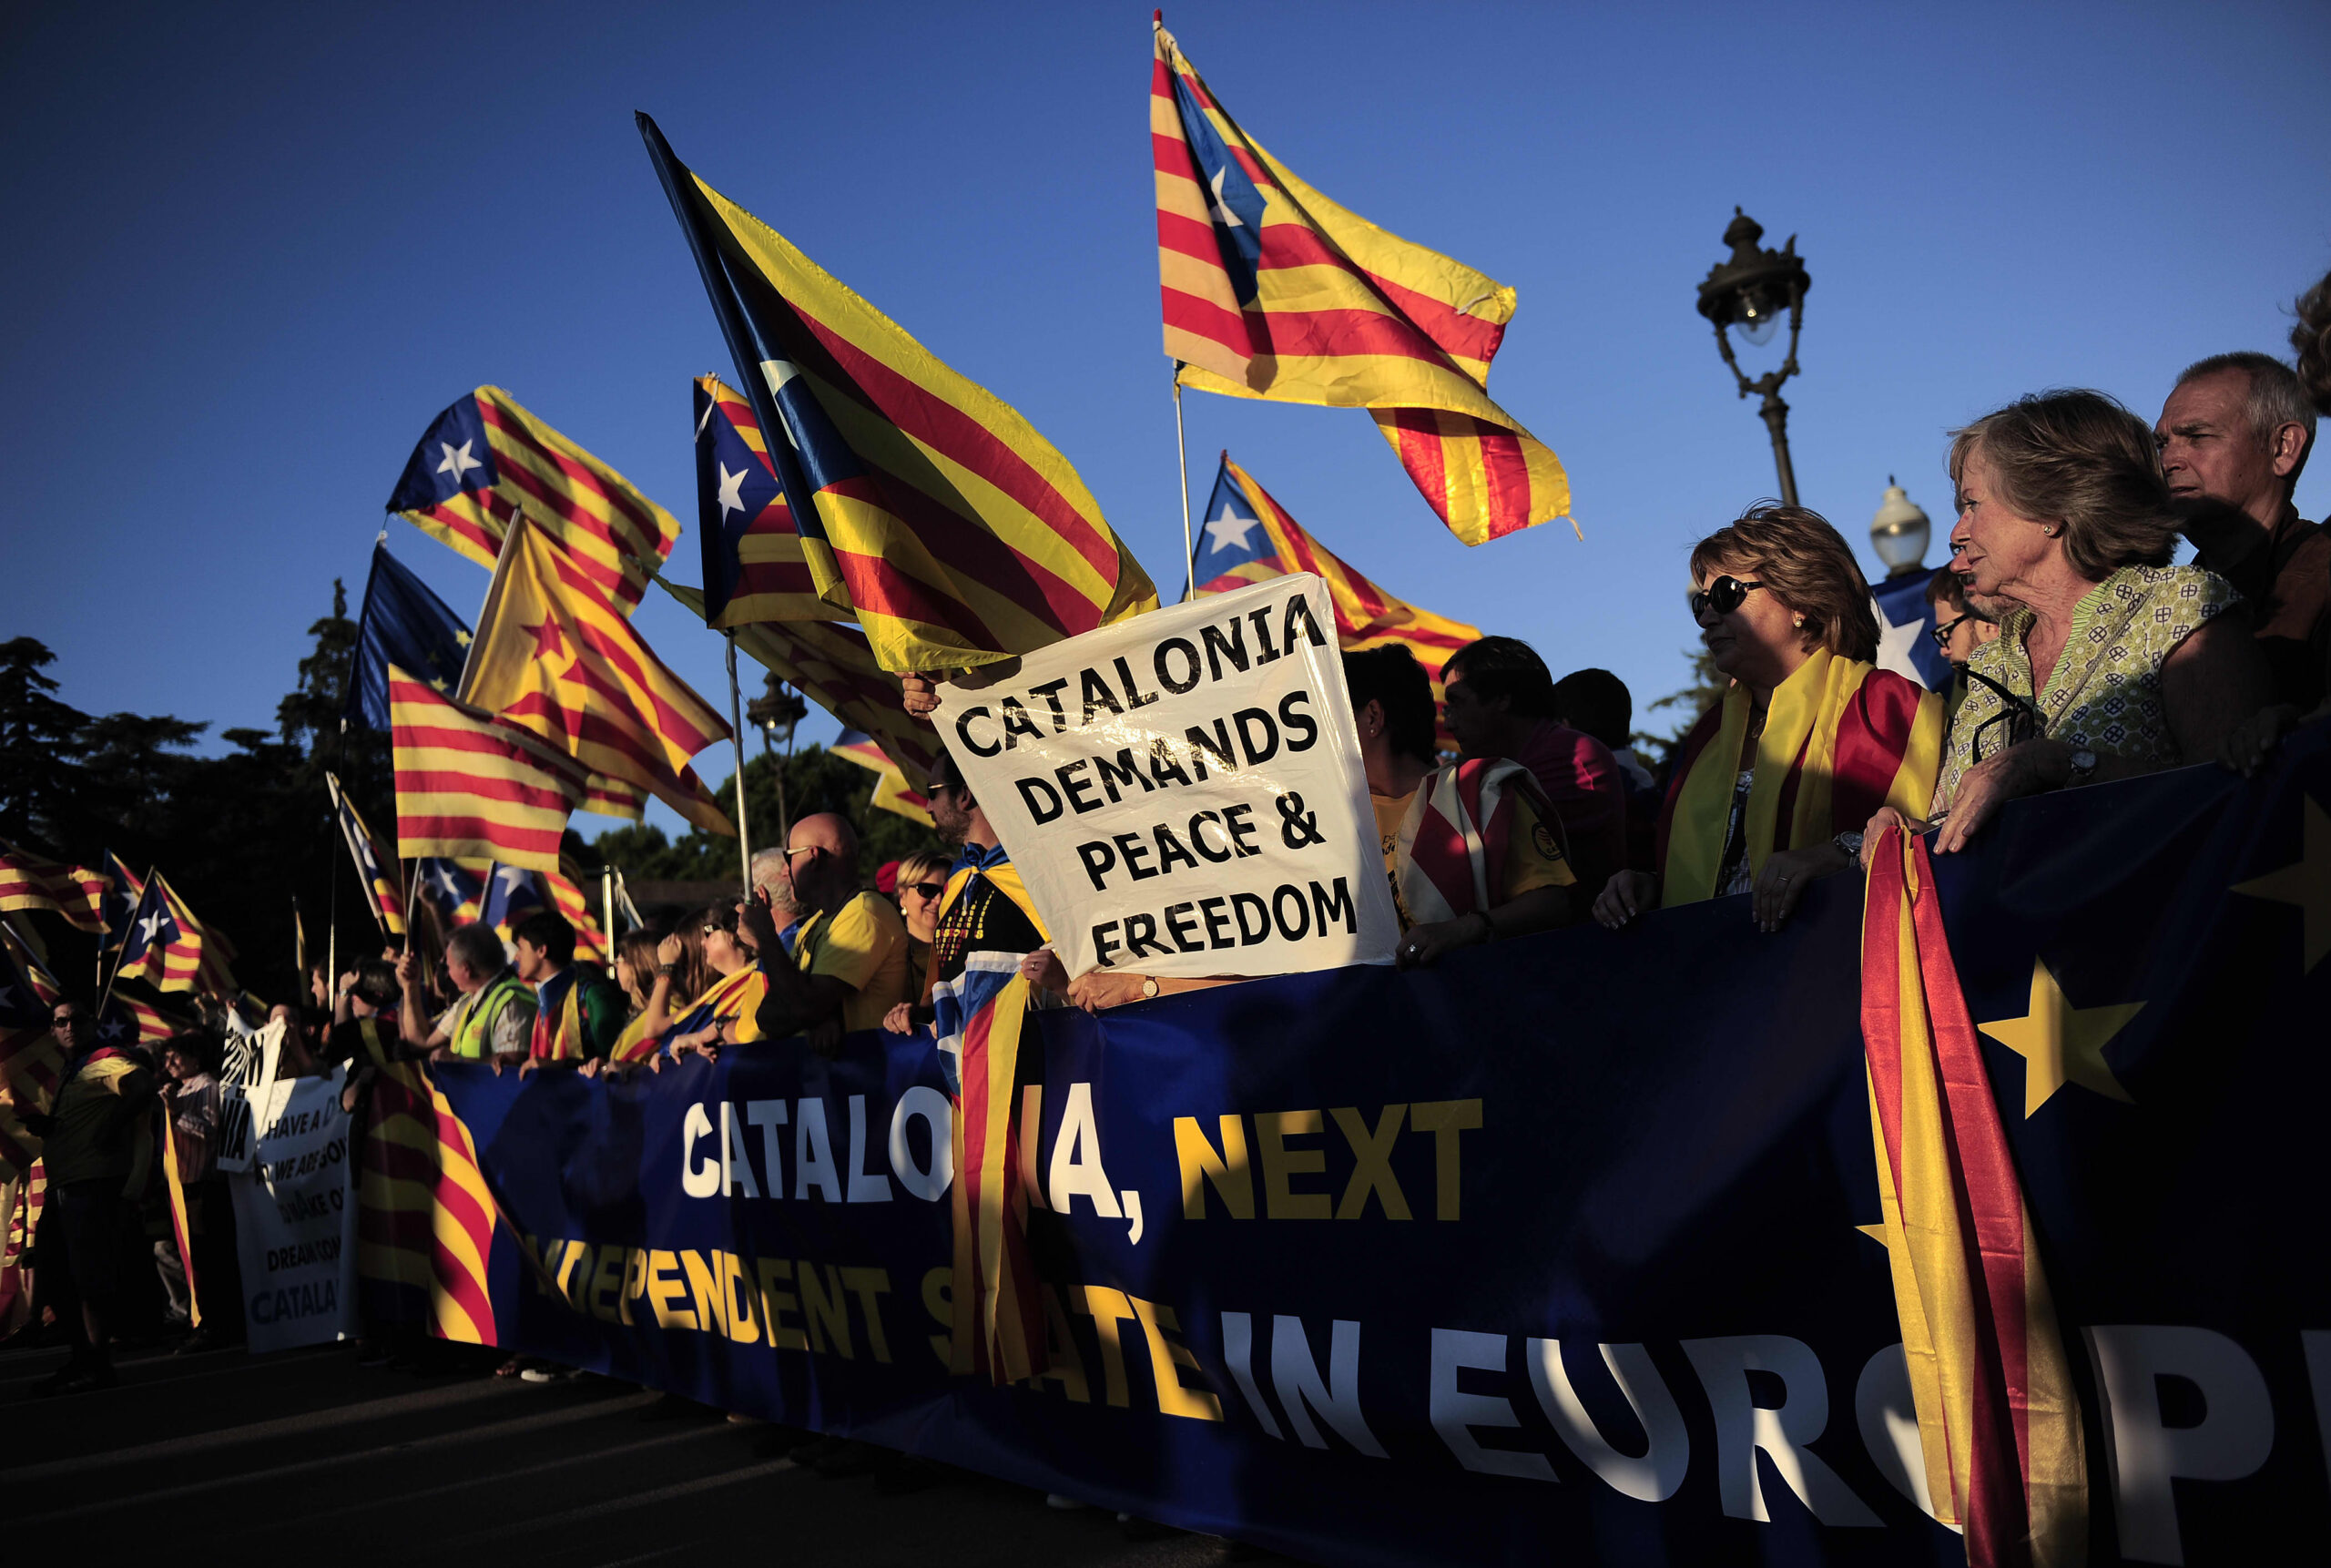 Katalonja voton me sytë për nga pavarësia!